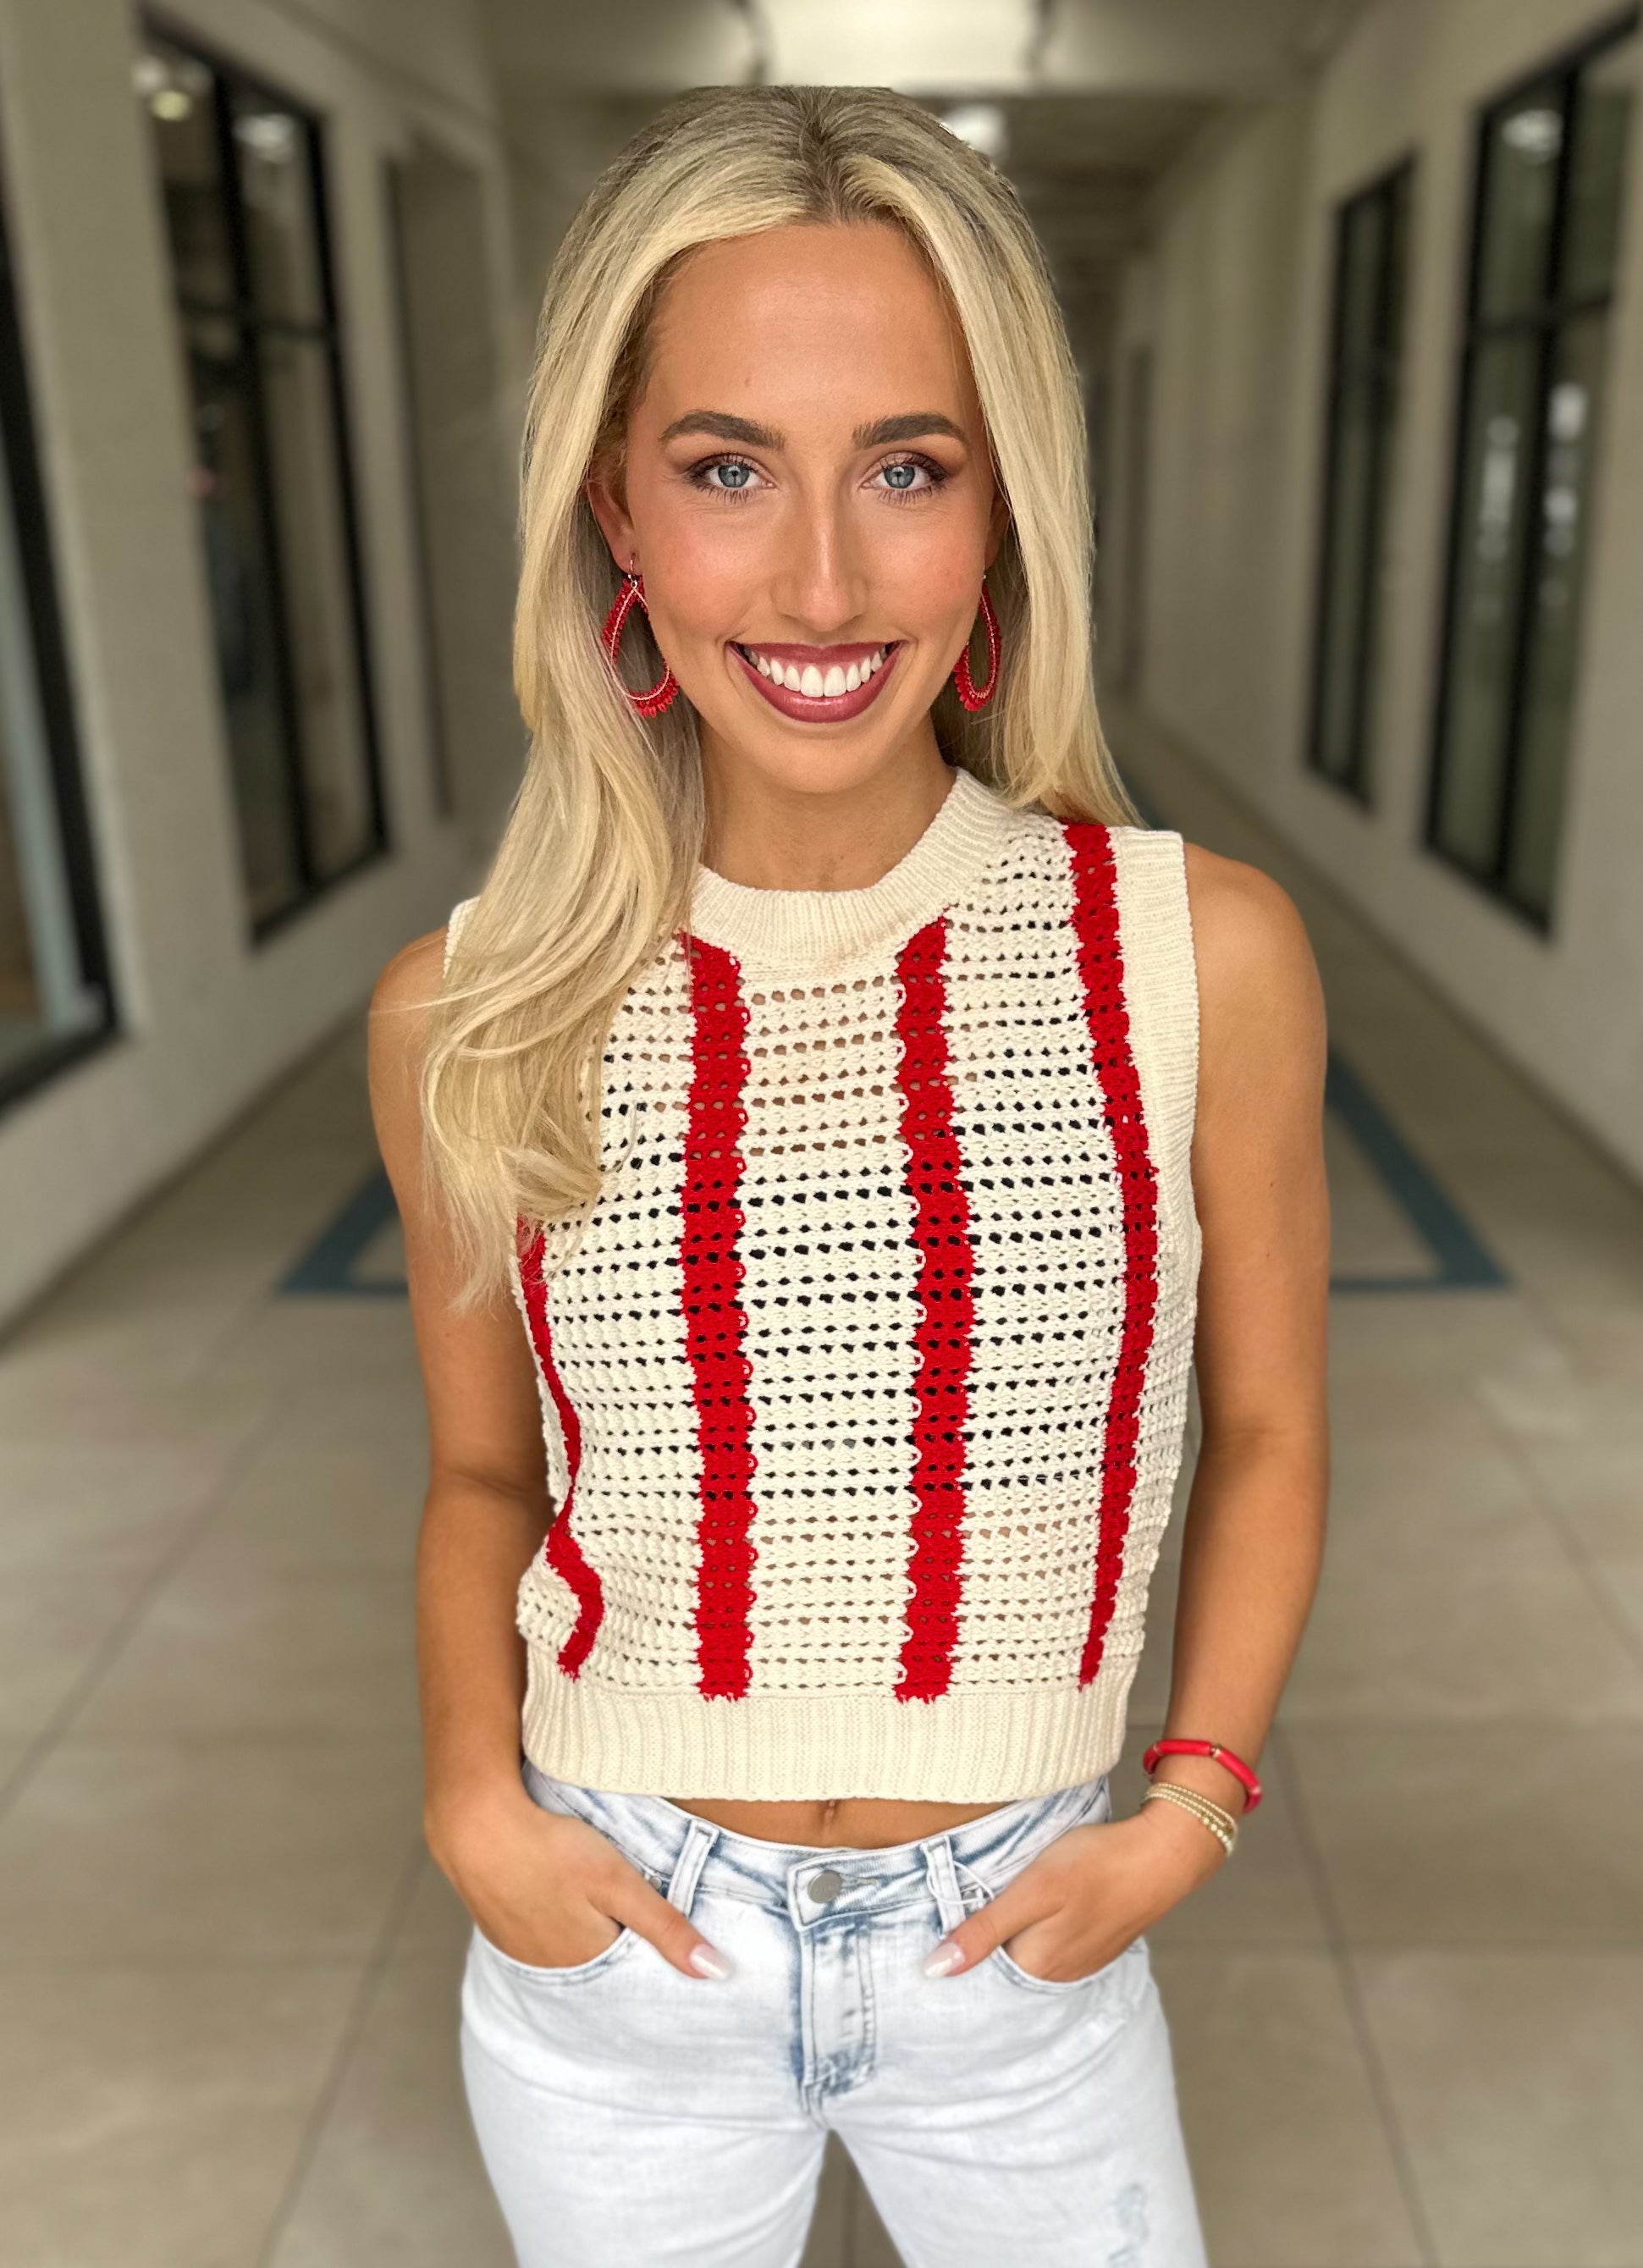 Luna Crochet Top (Red)